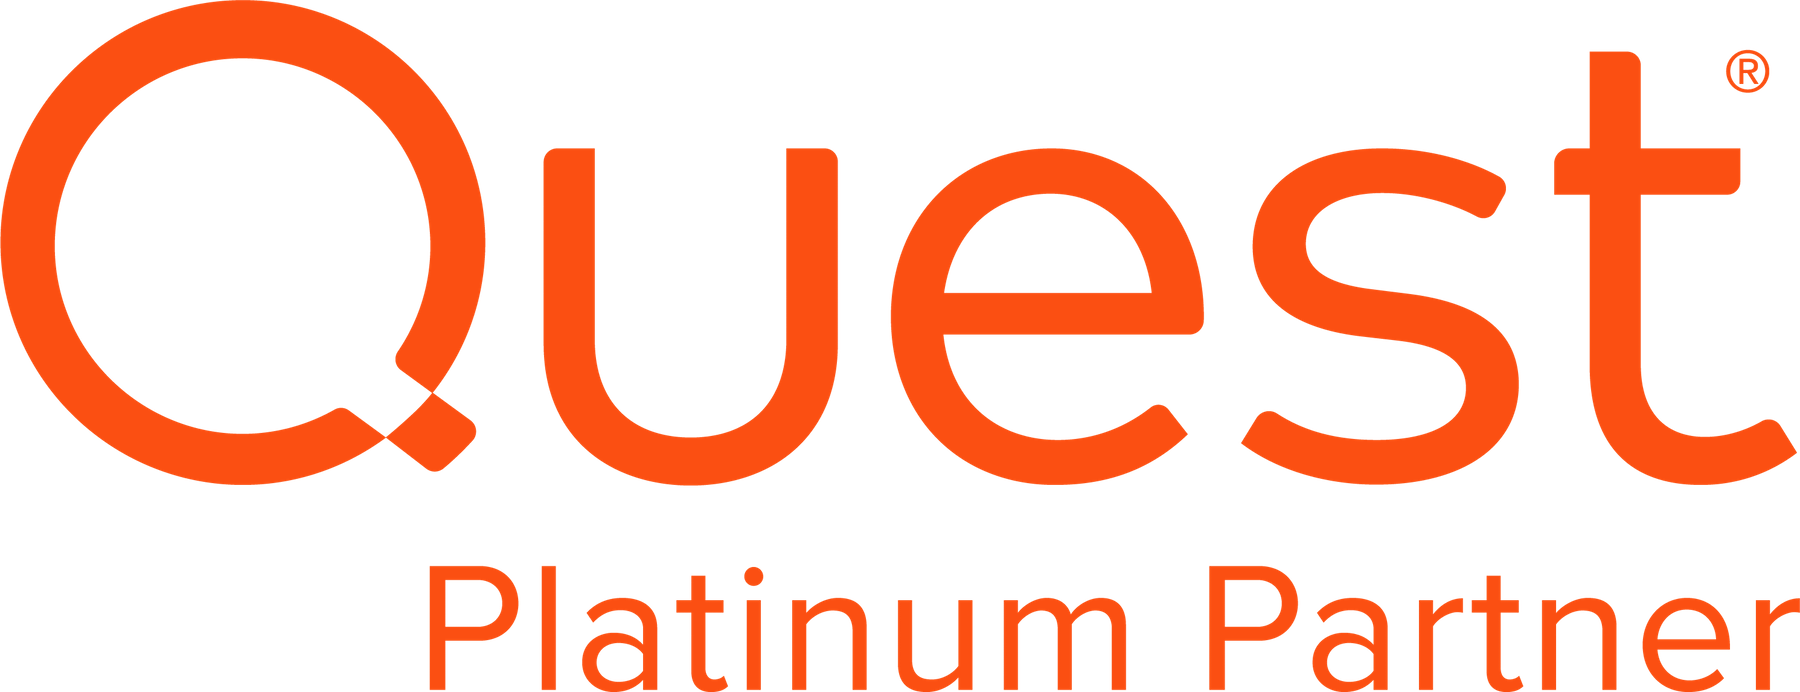 Quest-R-PlatinumPartner-Orange-RGB